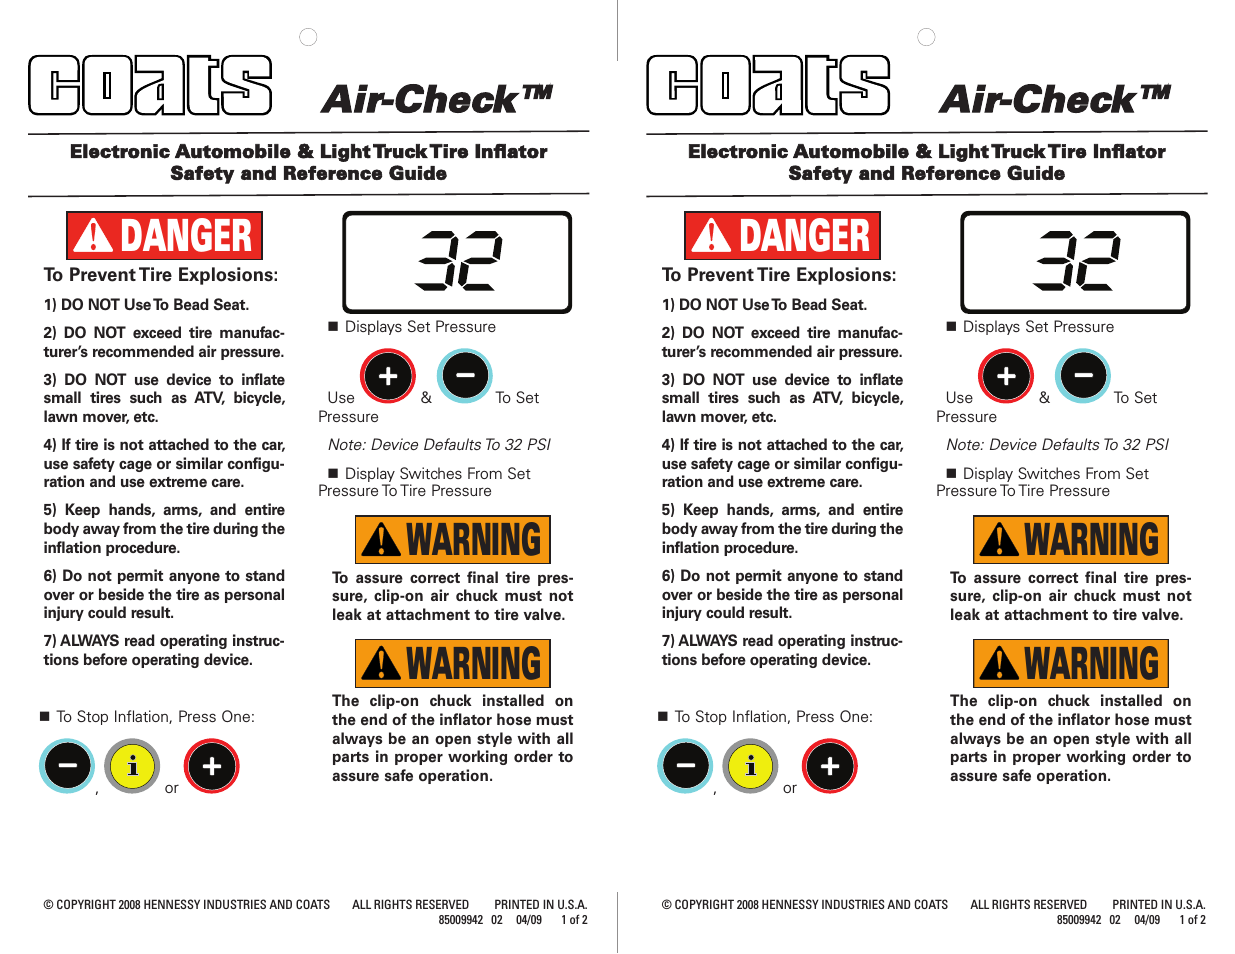 Air-Check Warning Card